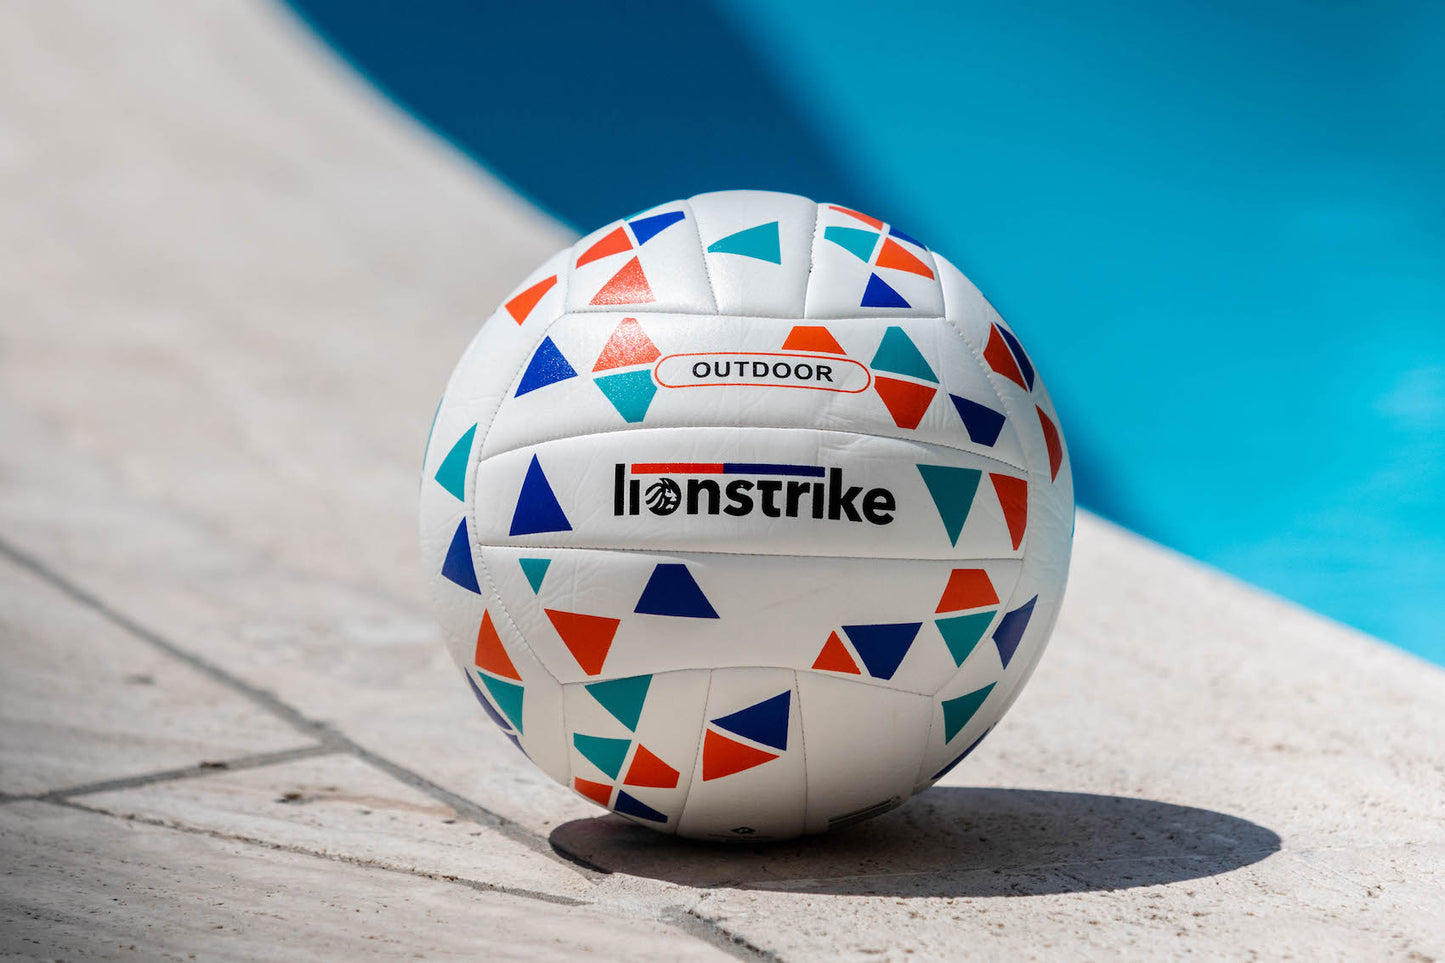 Lionstrike Fairtrade Outdoor & Beach Volleyball